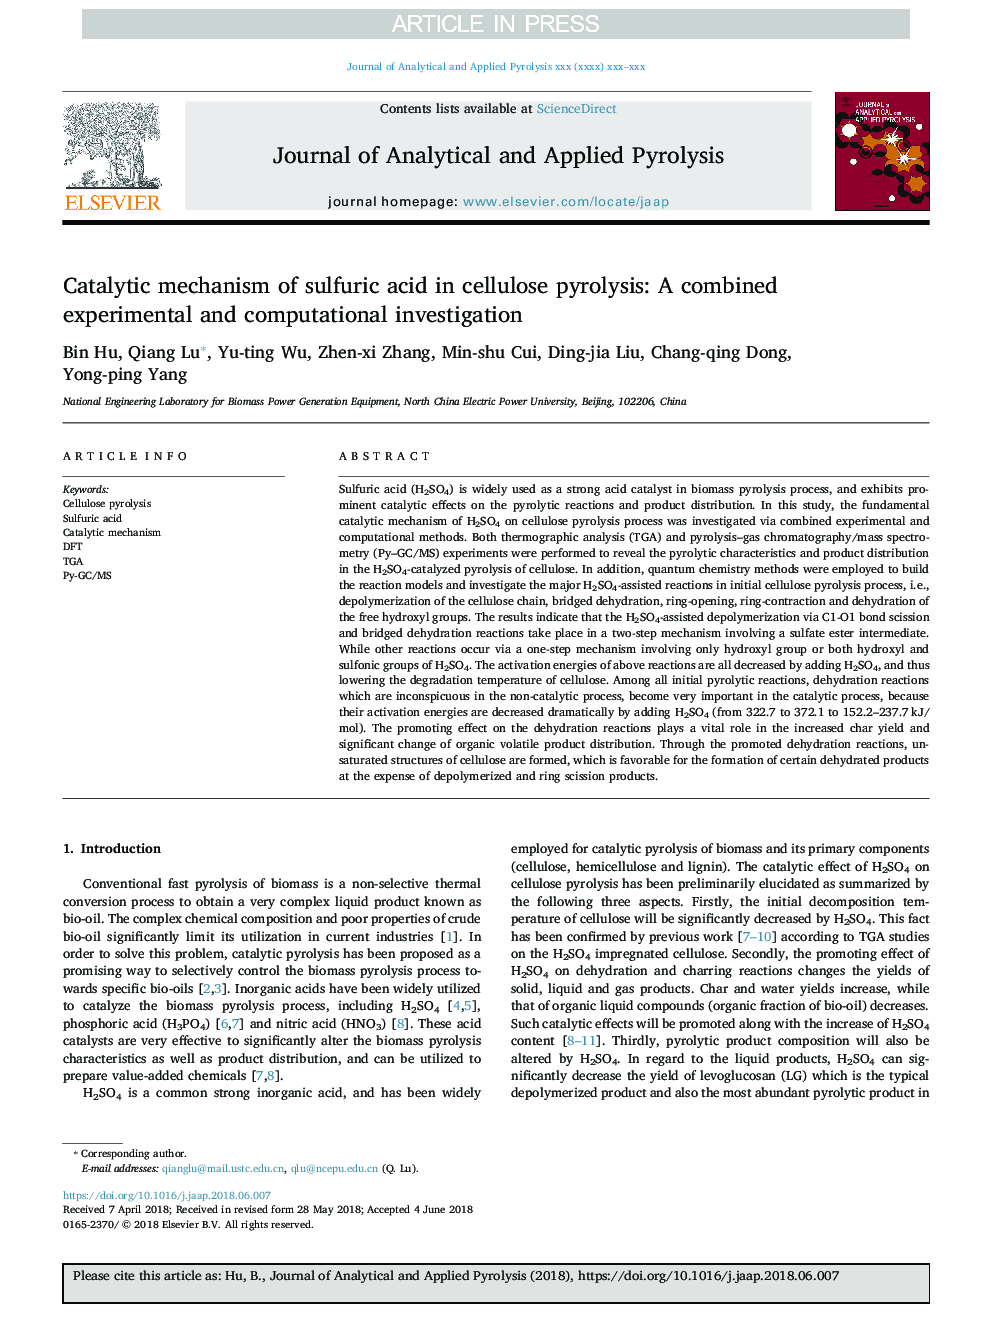 مکانیسم کاتالیزوری اسید سولفوریک در پیرولیز سلولز: یک بررسی ترکیبی تجربی و محاسباتی